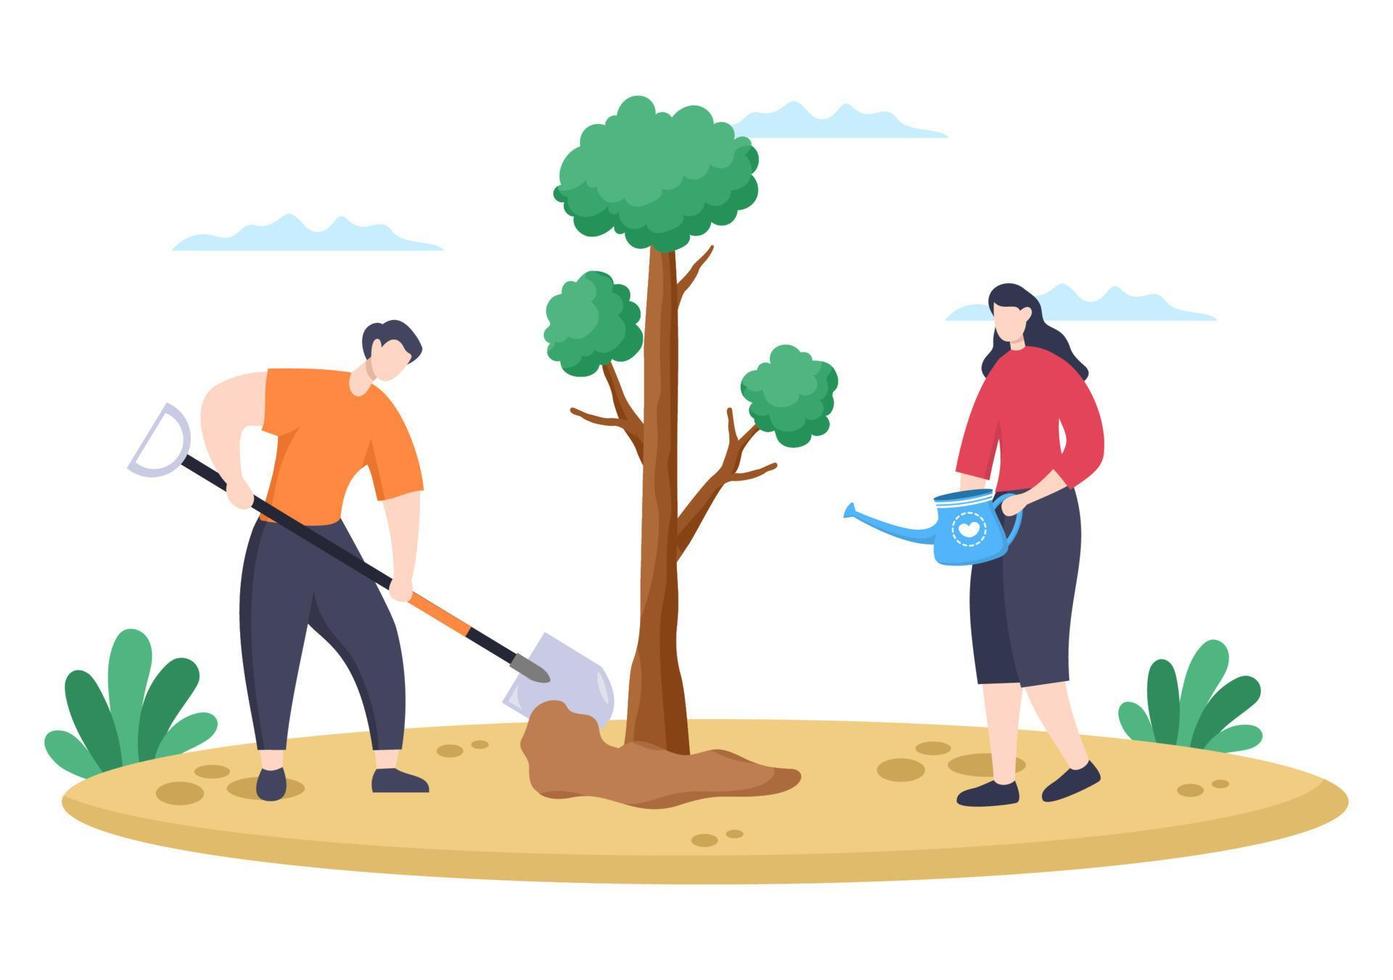 les gens plantant des arbres illustration vectorielle de dessin animé plat avec le jardinage, l'agriculture et l'agriculture utilisent des racines d'arbres ou une pelle pour prendre soin du concept d'environnement vecteur